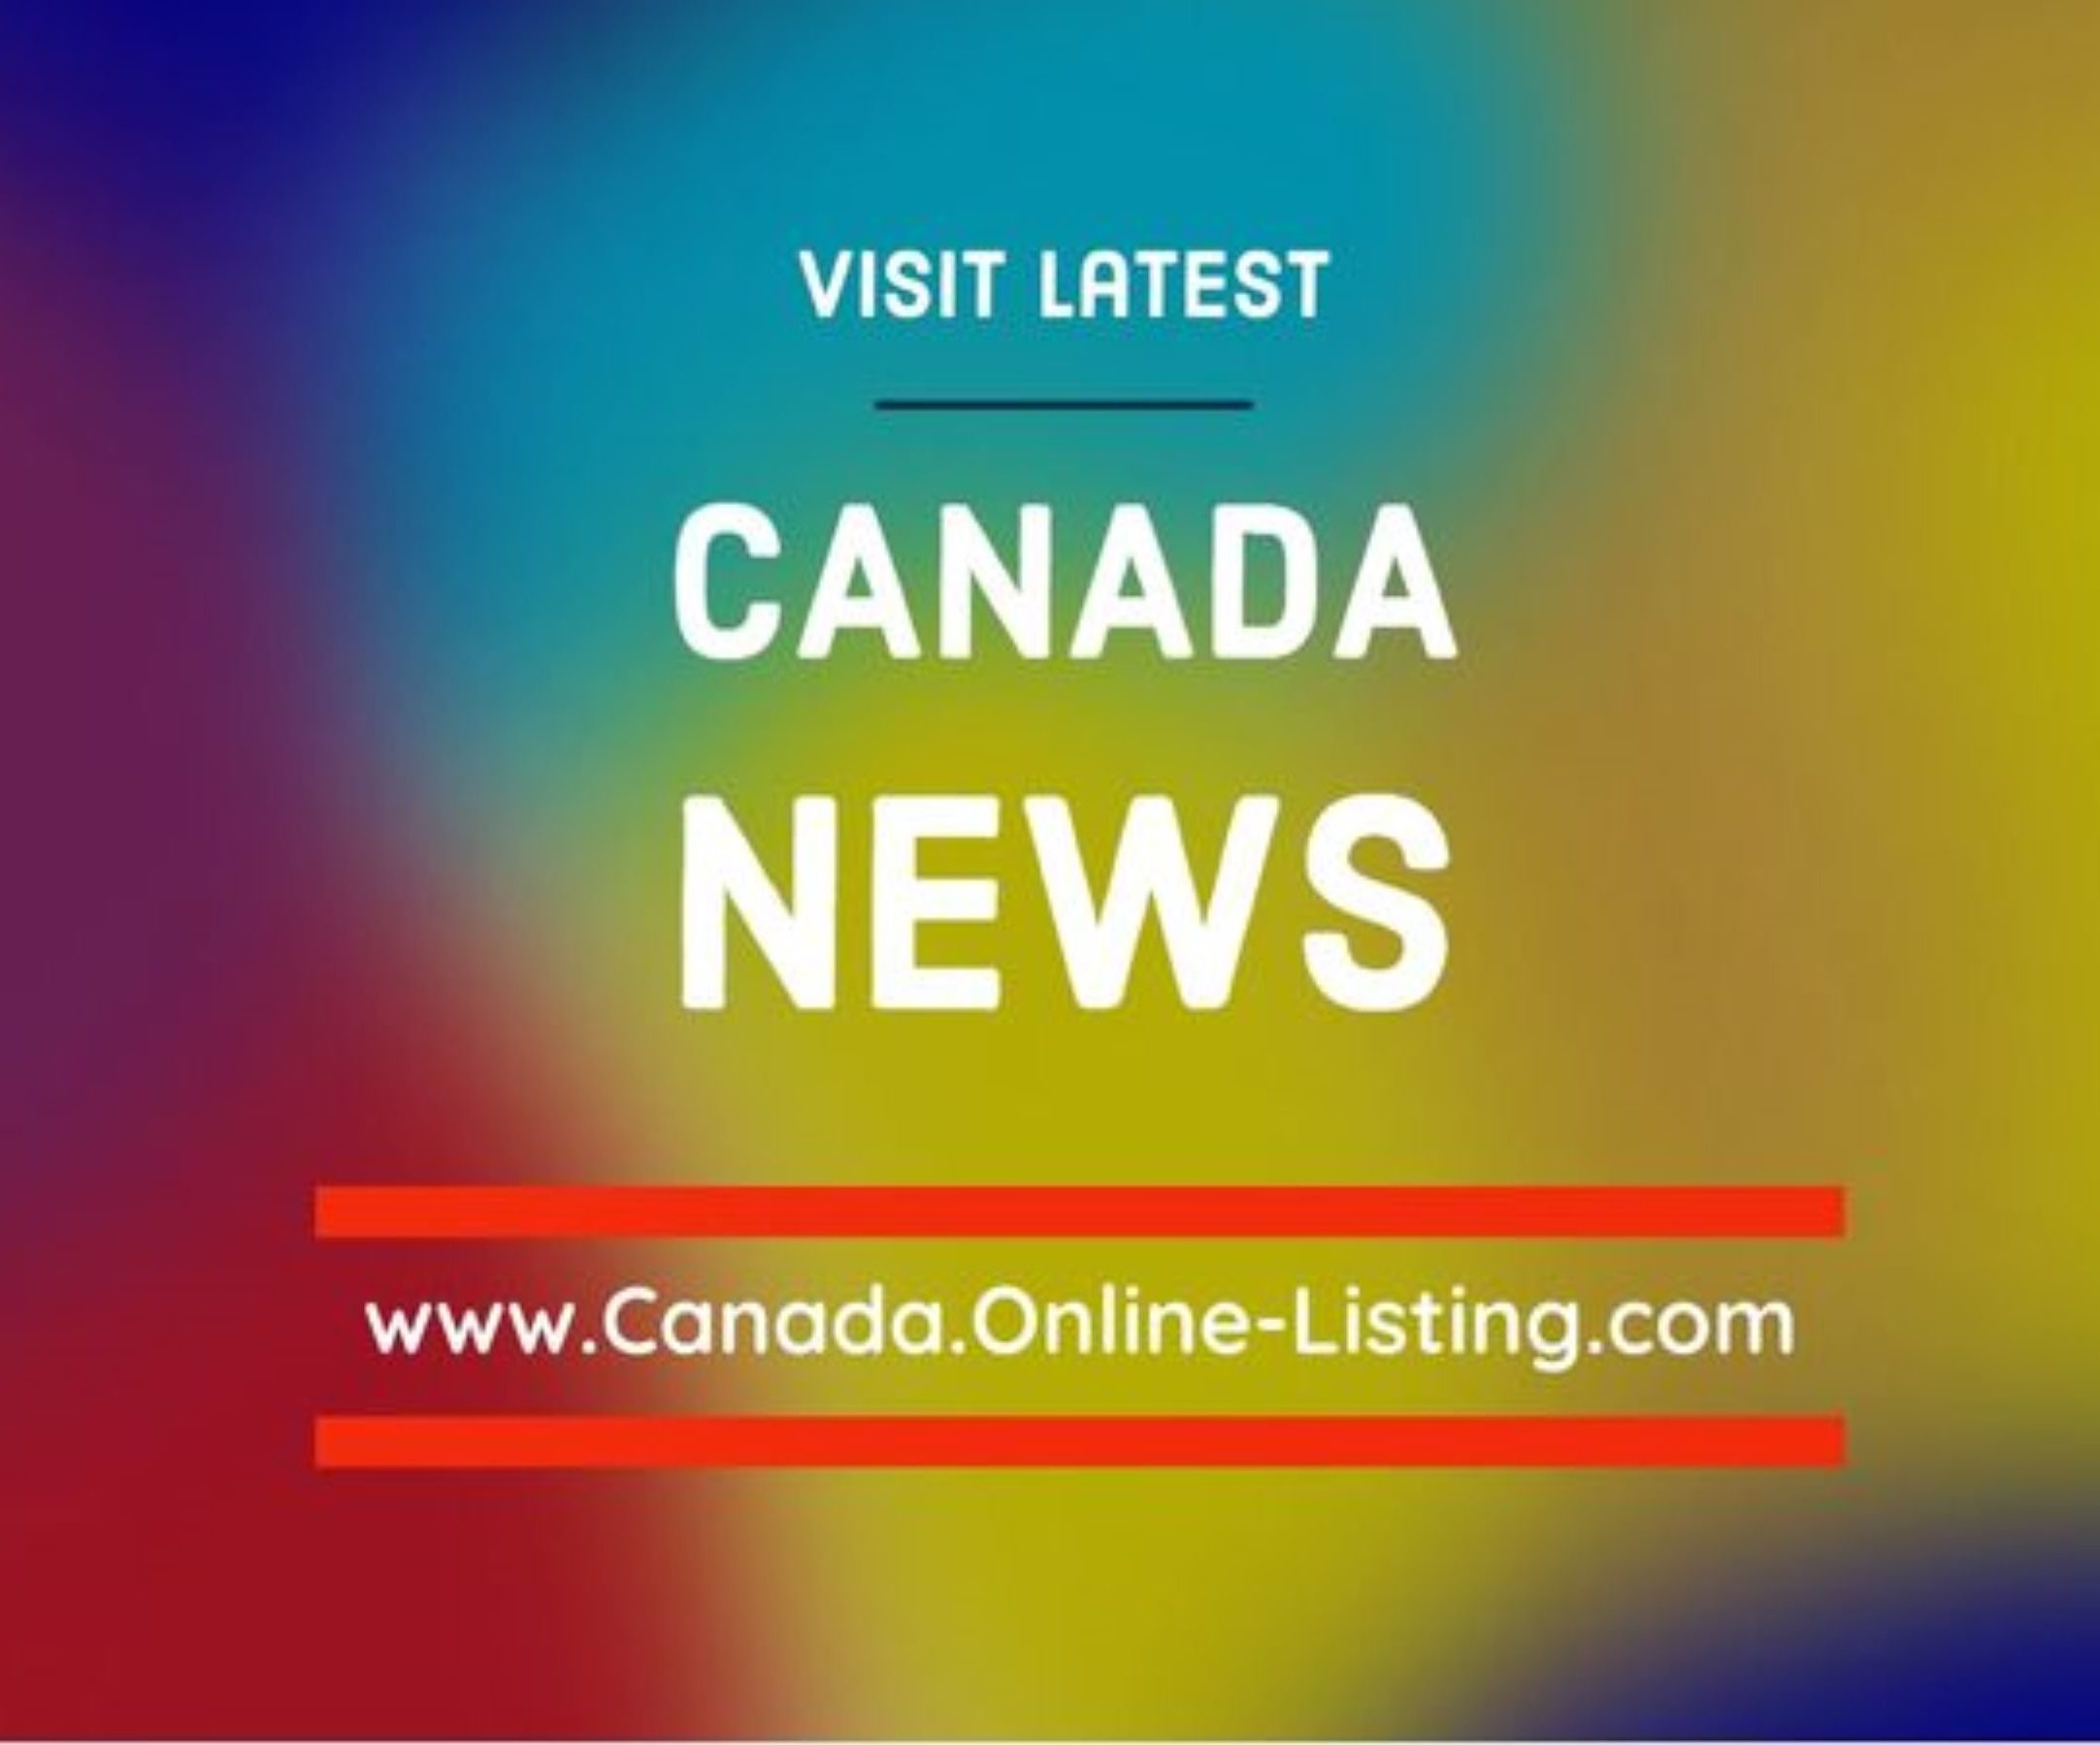 Canada News Listìng Rumors